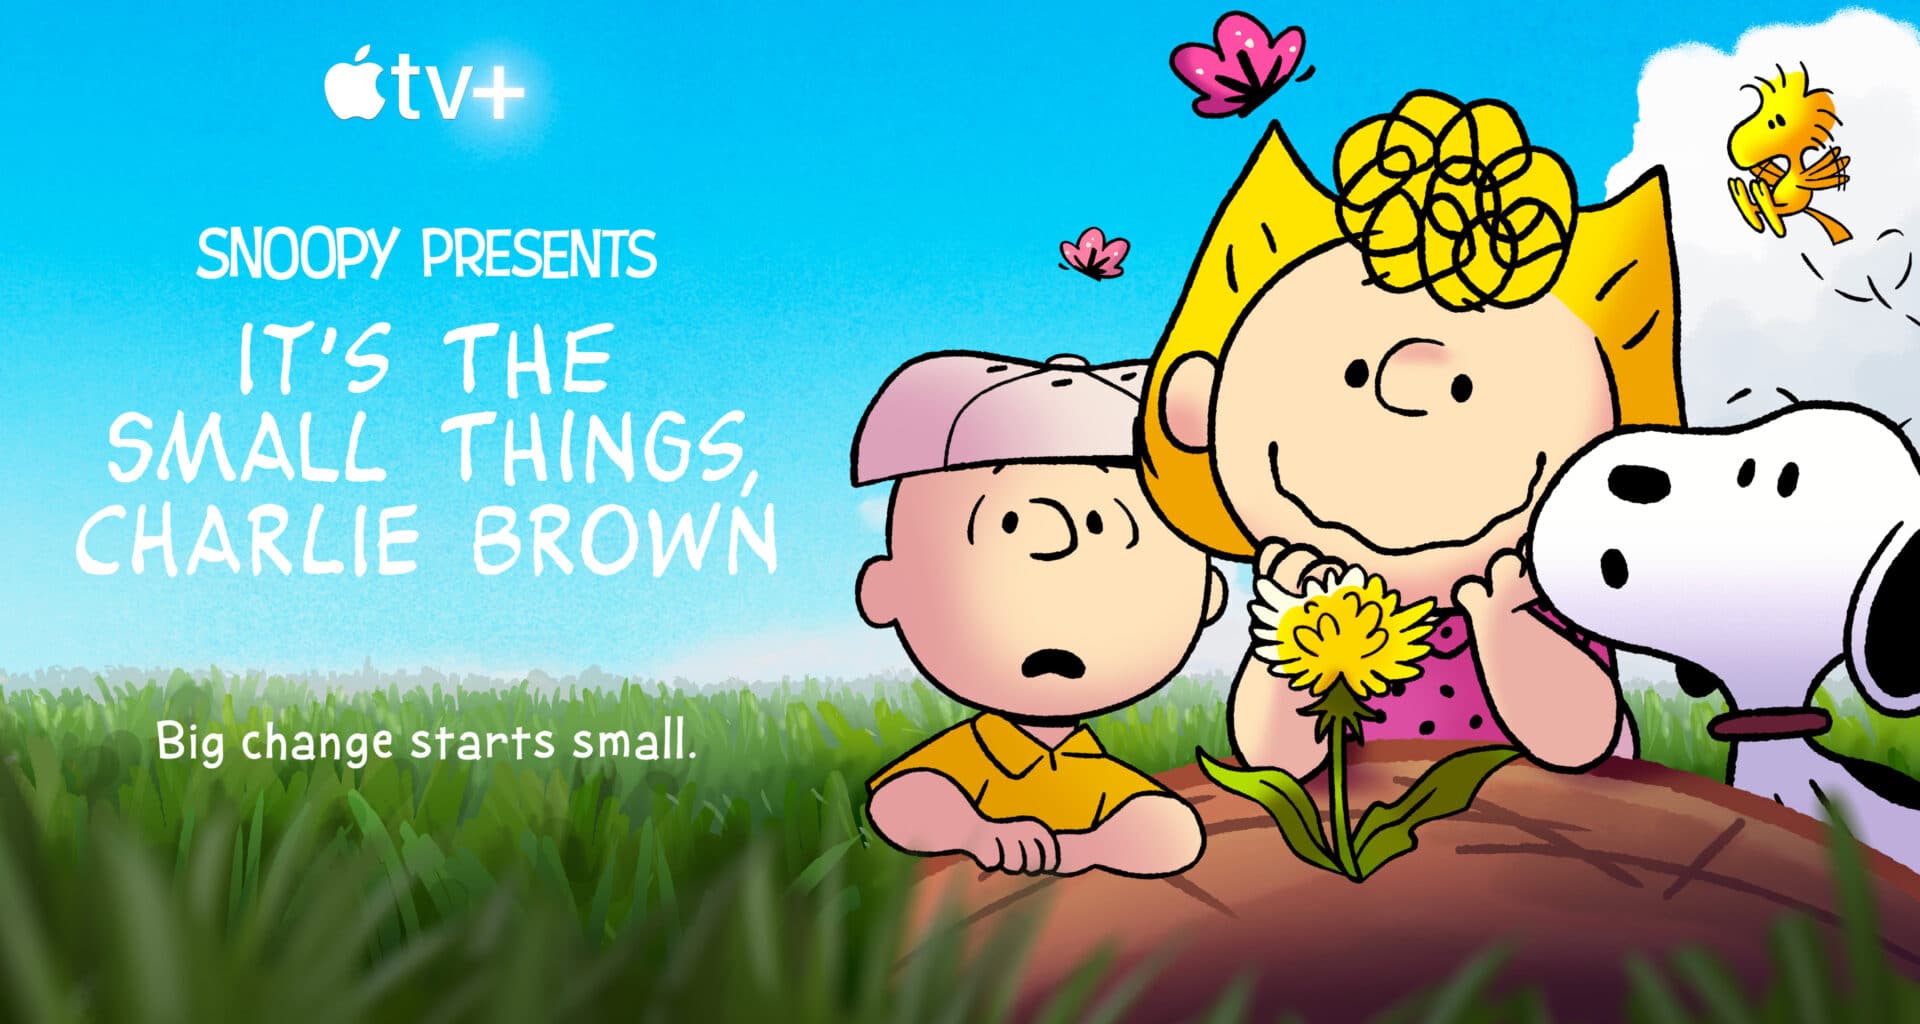 "São as Pequenas Coisas, Charlie Brown"